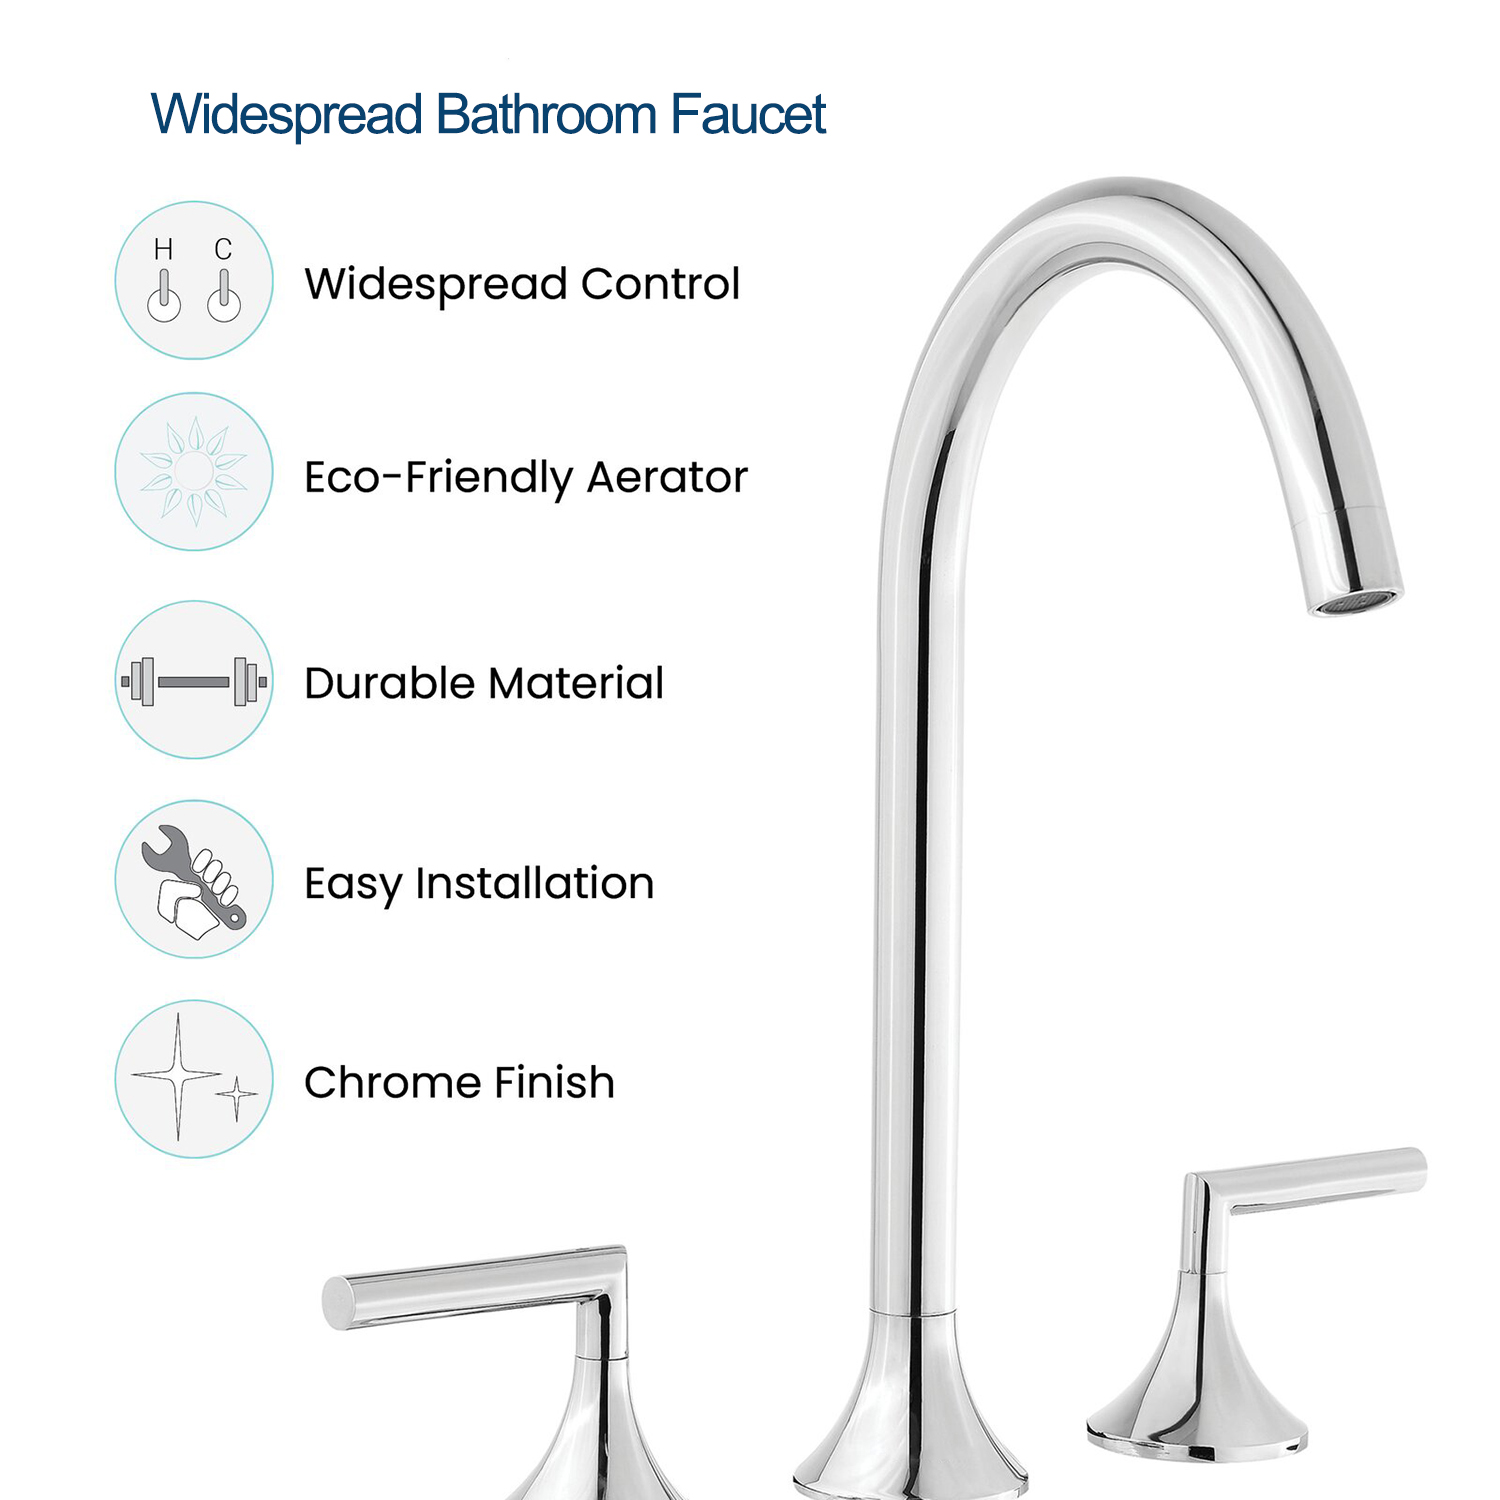 Torneira Aquacubic Chrome comercial para banheiro com duas alças, ampla, lavatório, montagem em deck, torneira misturadora